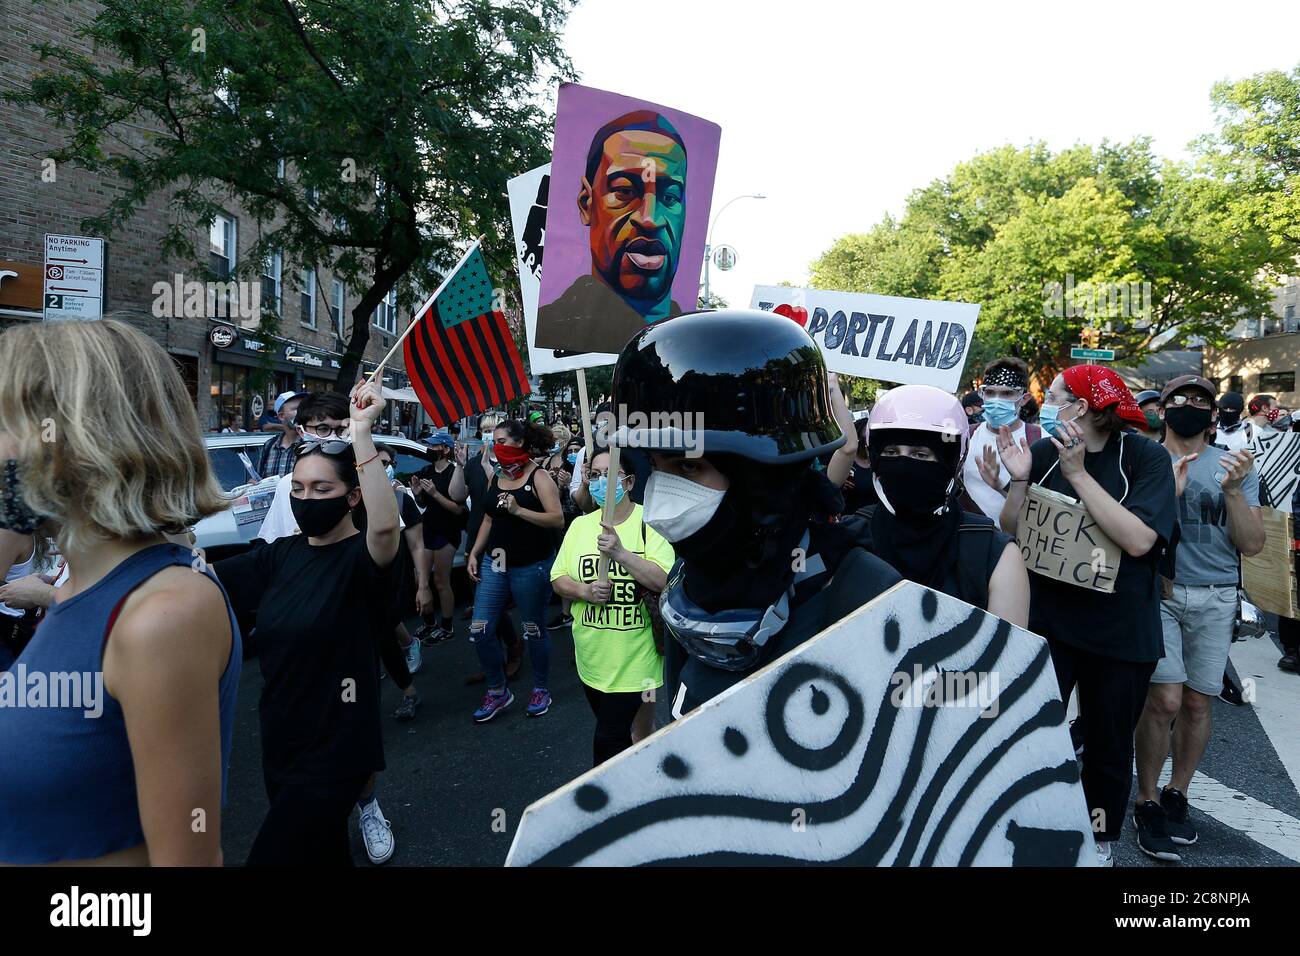 Demonstranten marschieren am 25. Juli 2020 in New York City gegen die Übernahme der Bundespolizei durch Portland Oregon und ihre Taktik zur Bekämpfung friedlicher Kundgebungen. Die Proteste in Portland begannen nach dem Tod von George Floyd und Breonna Taylor, die von Polizisten getötet wurden. Präsident Trump hat sich zum Präsidenten der Ordnungsbehörden erklärt und die lokalen Strafverfolgungsbehörden aufgefordert, die bei Protesten eingesetzte Gewalt zu erhöhen. Präsident Trump hat kürzlich gesagt, er entsende Bundesagenten, um die Strafverfolgungsbehörden in Portland zu unterstützen, um die Proteste zu kontrollieren. (Foto von John Lamparski/Sipa USA) Stockfoto